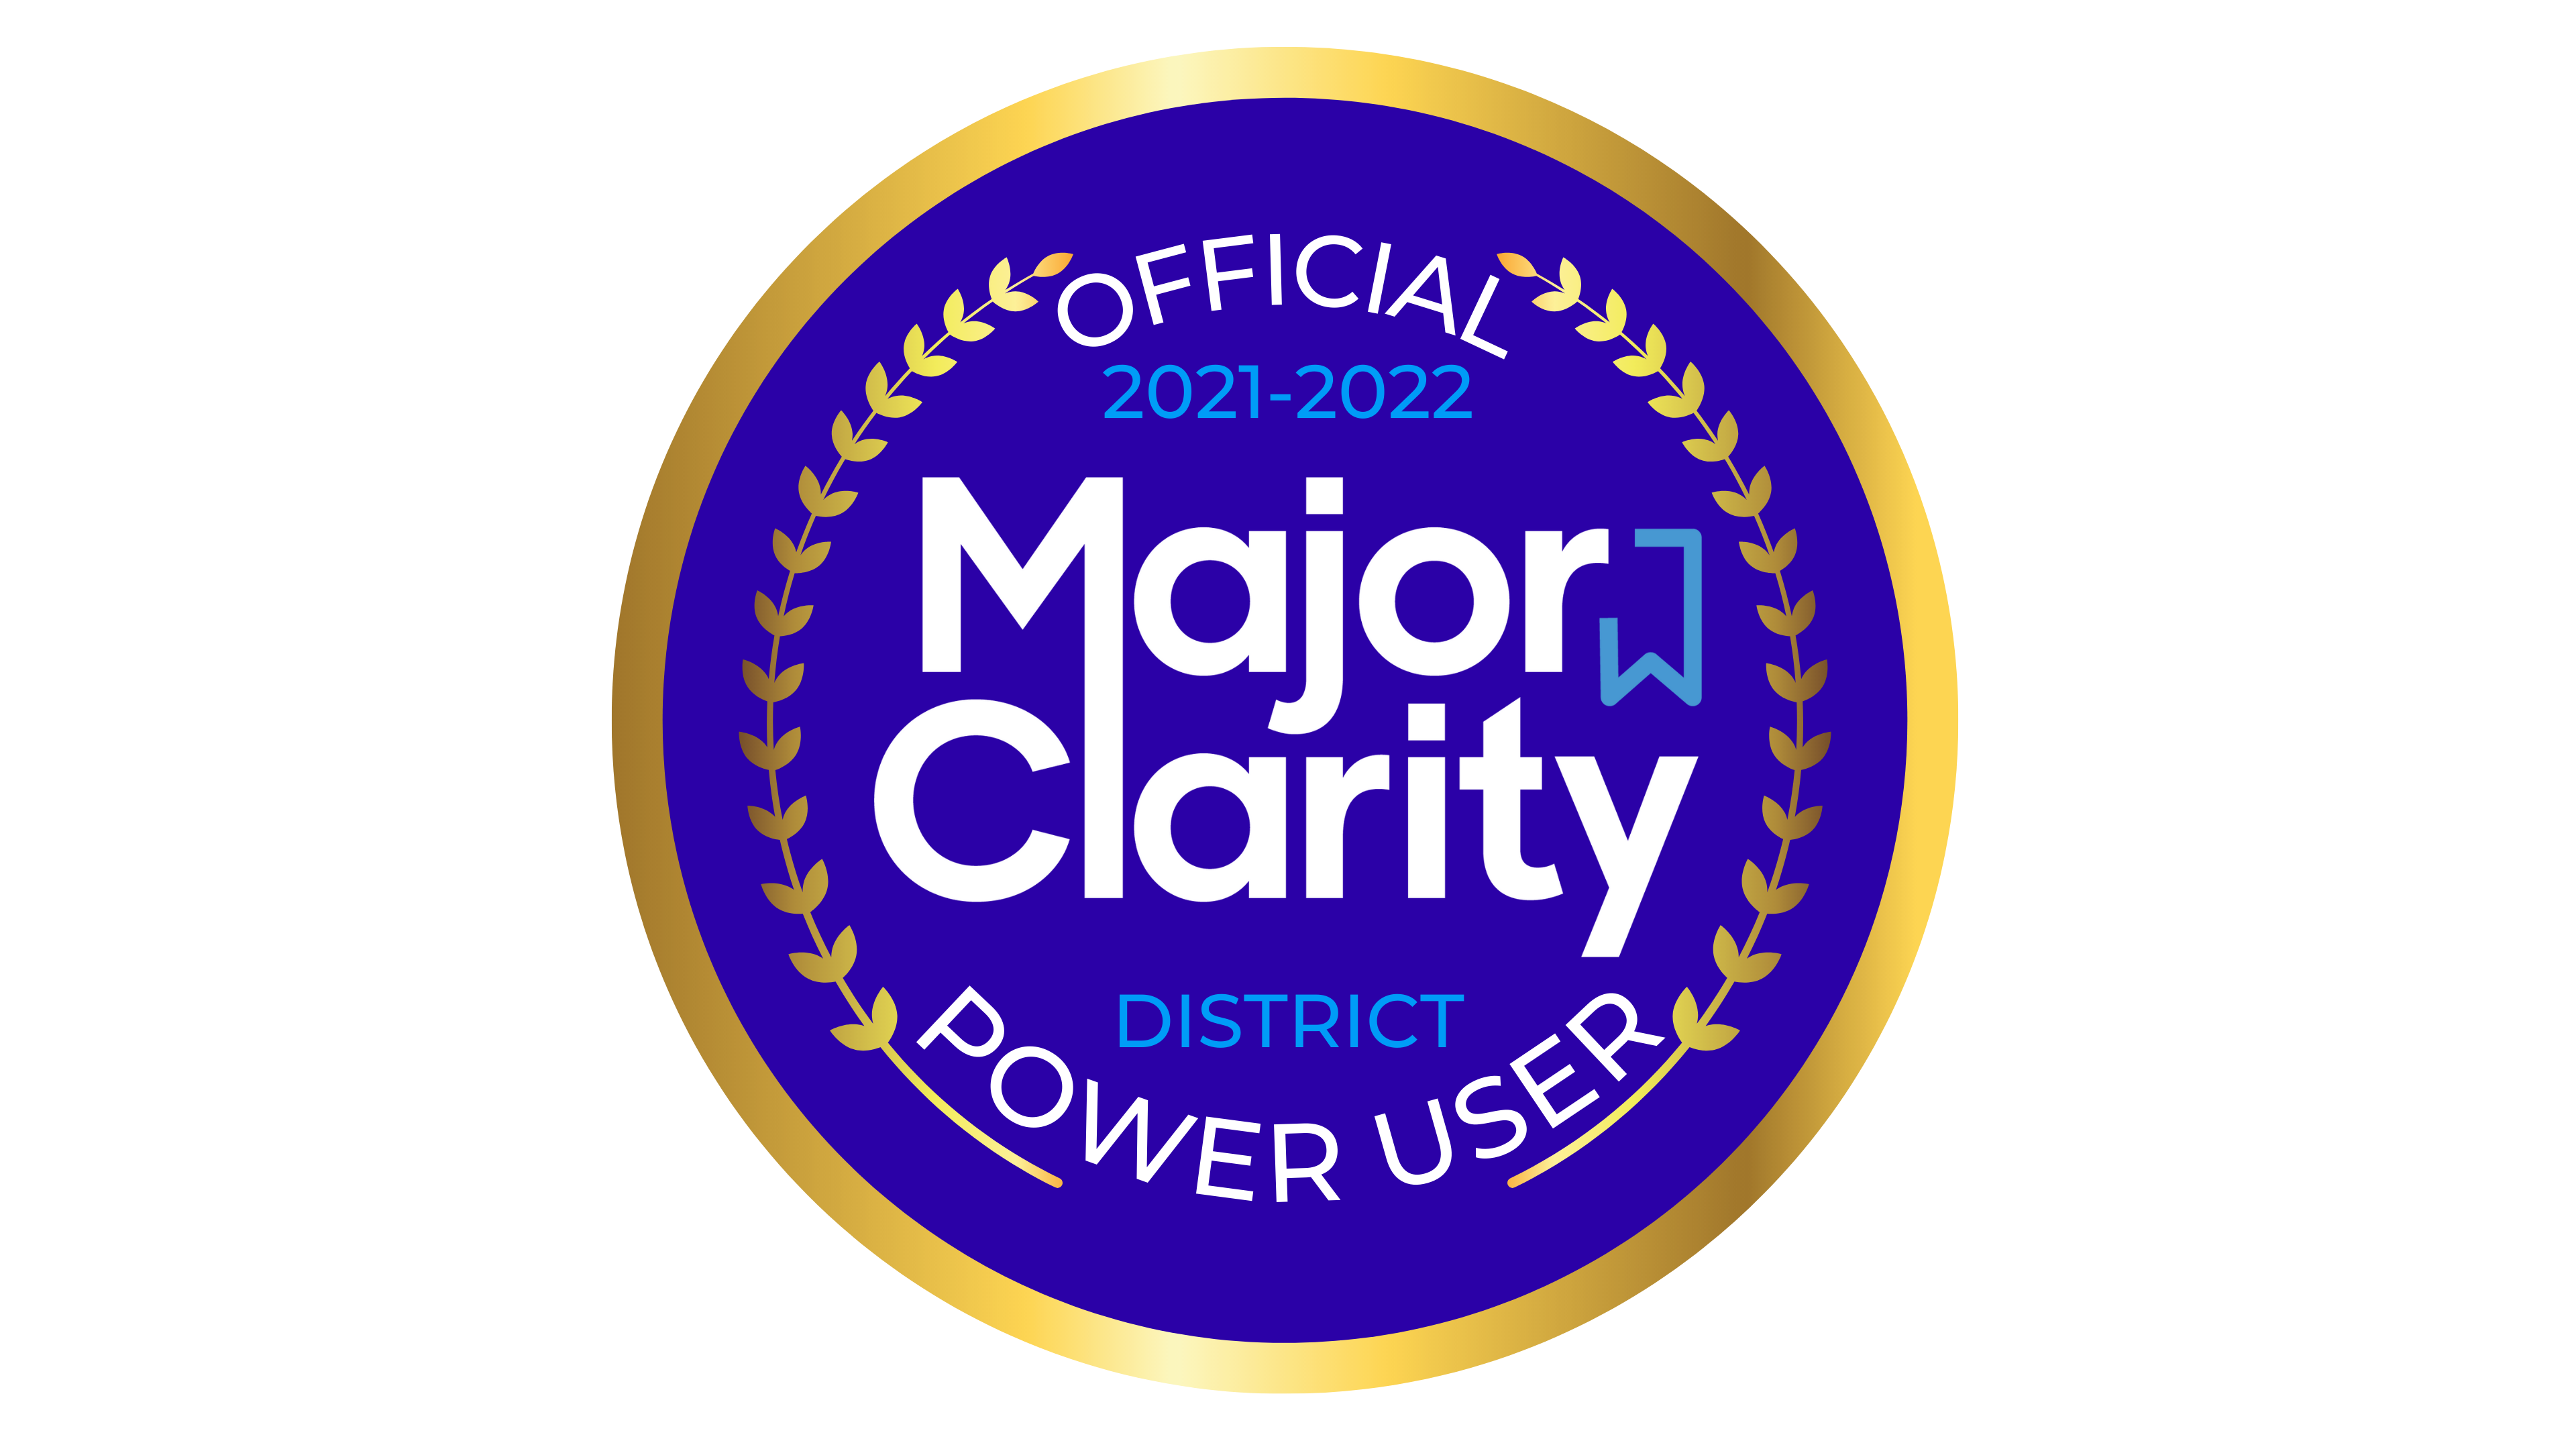 Major Clarity - District PowerUser Badge 